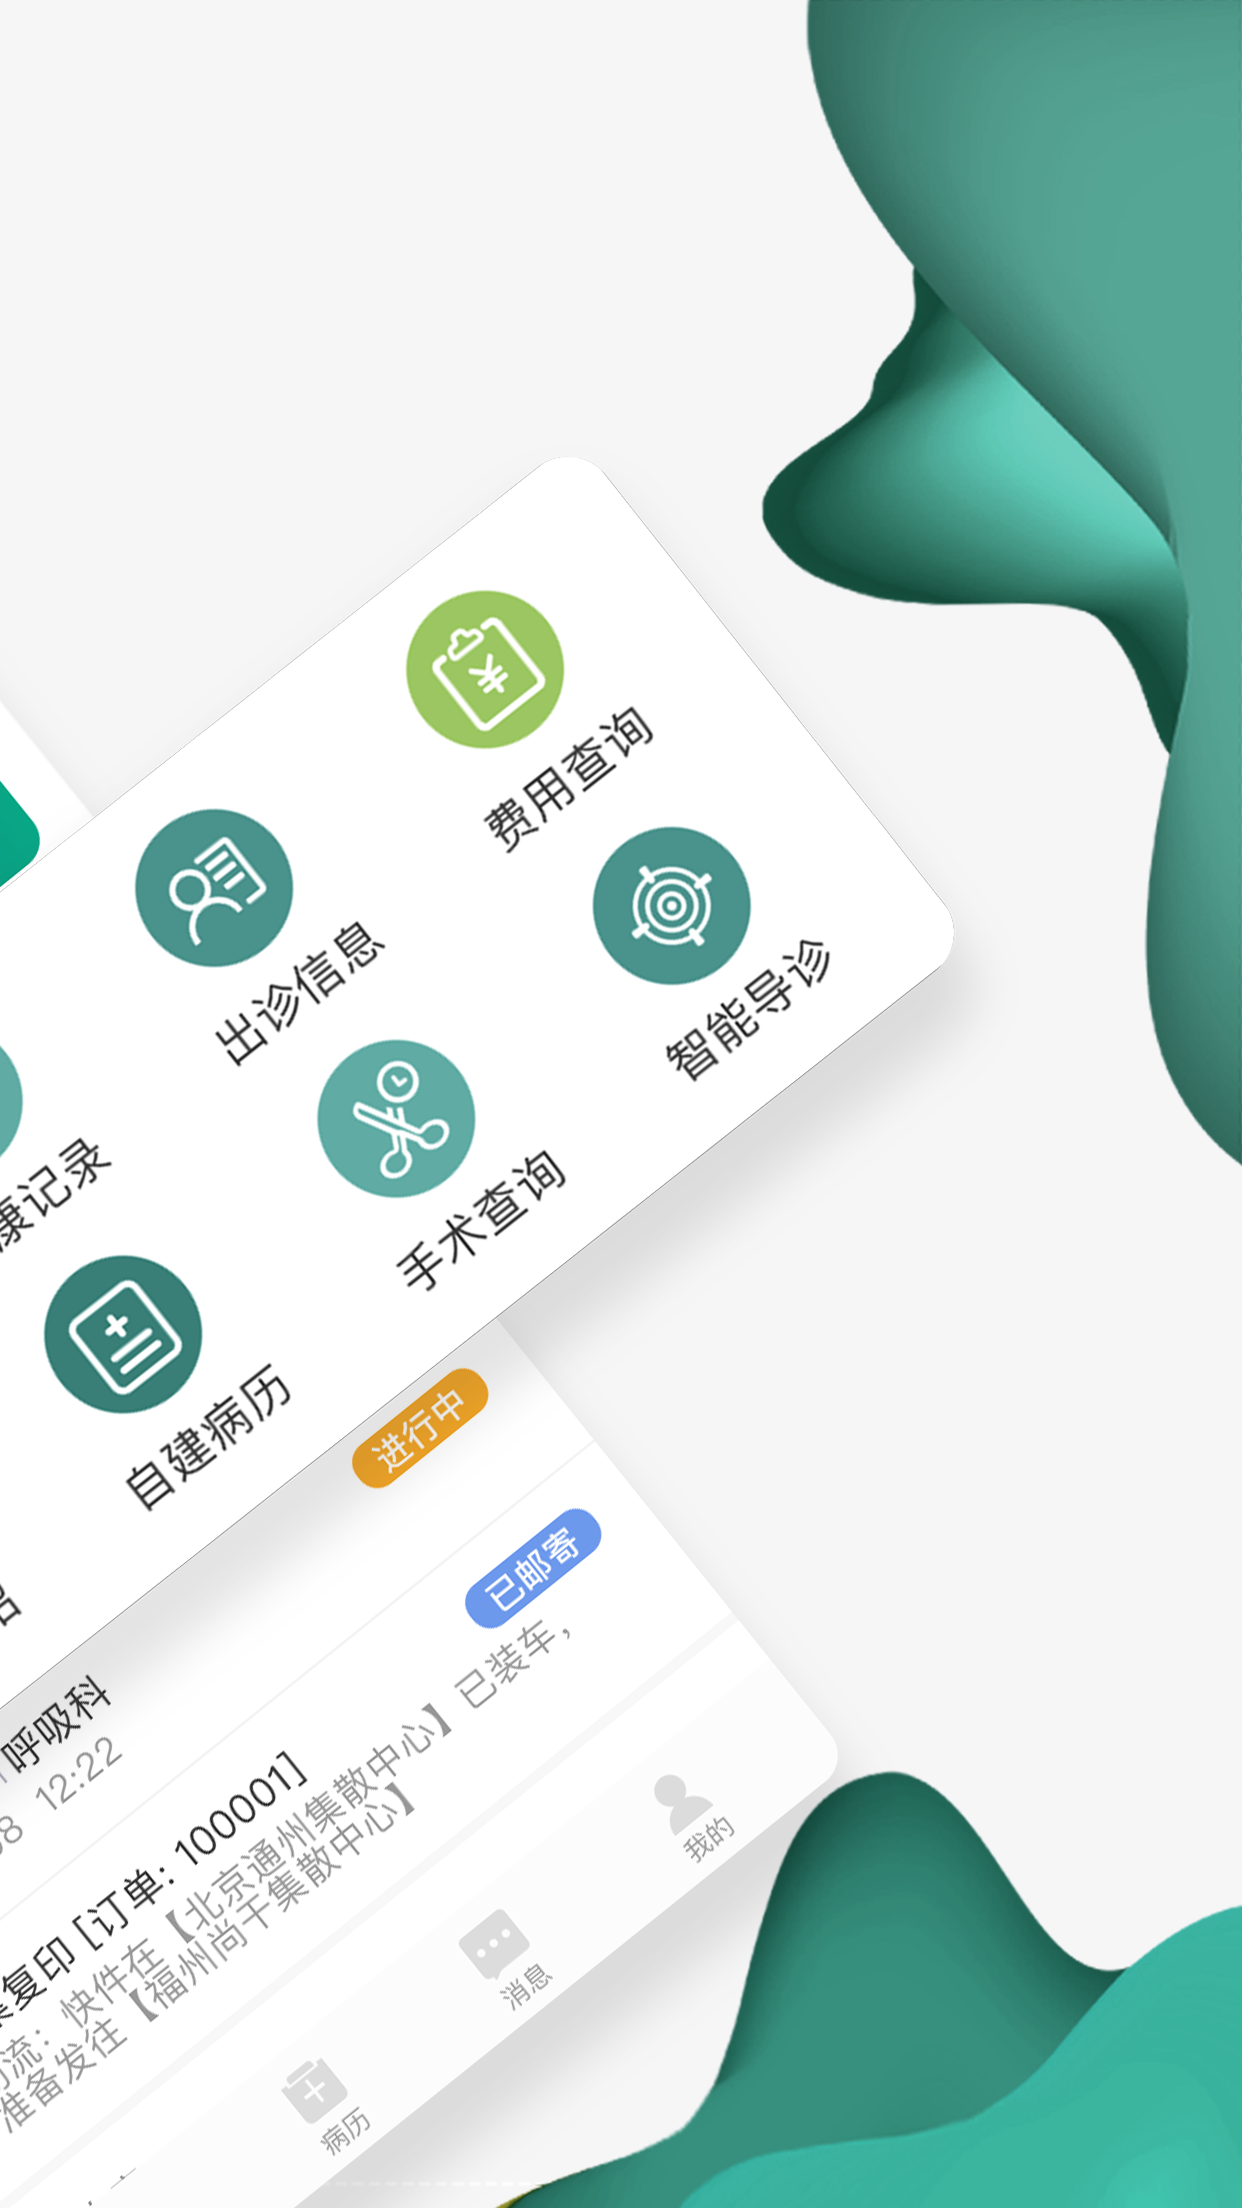 怀医健康云app 2.5.0